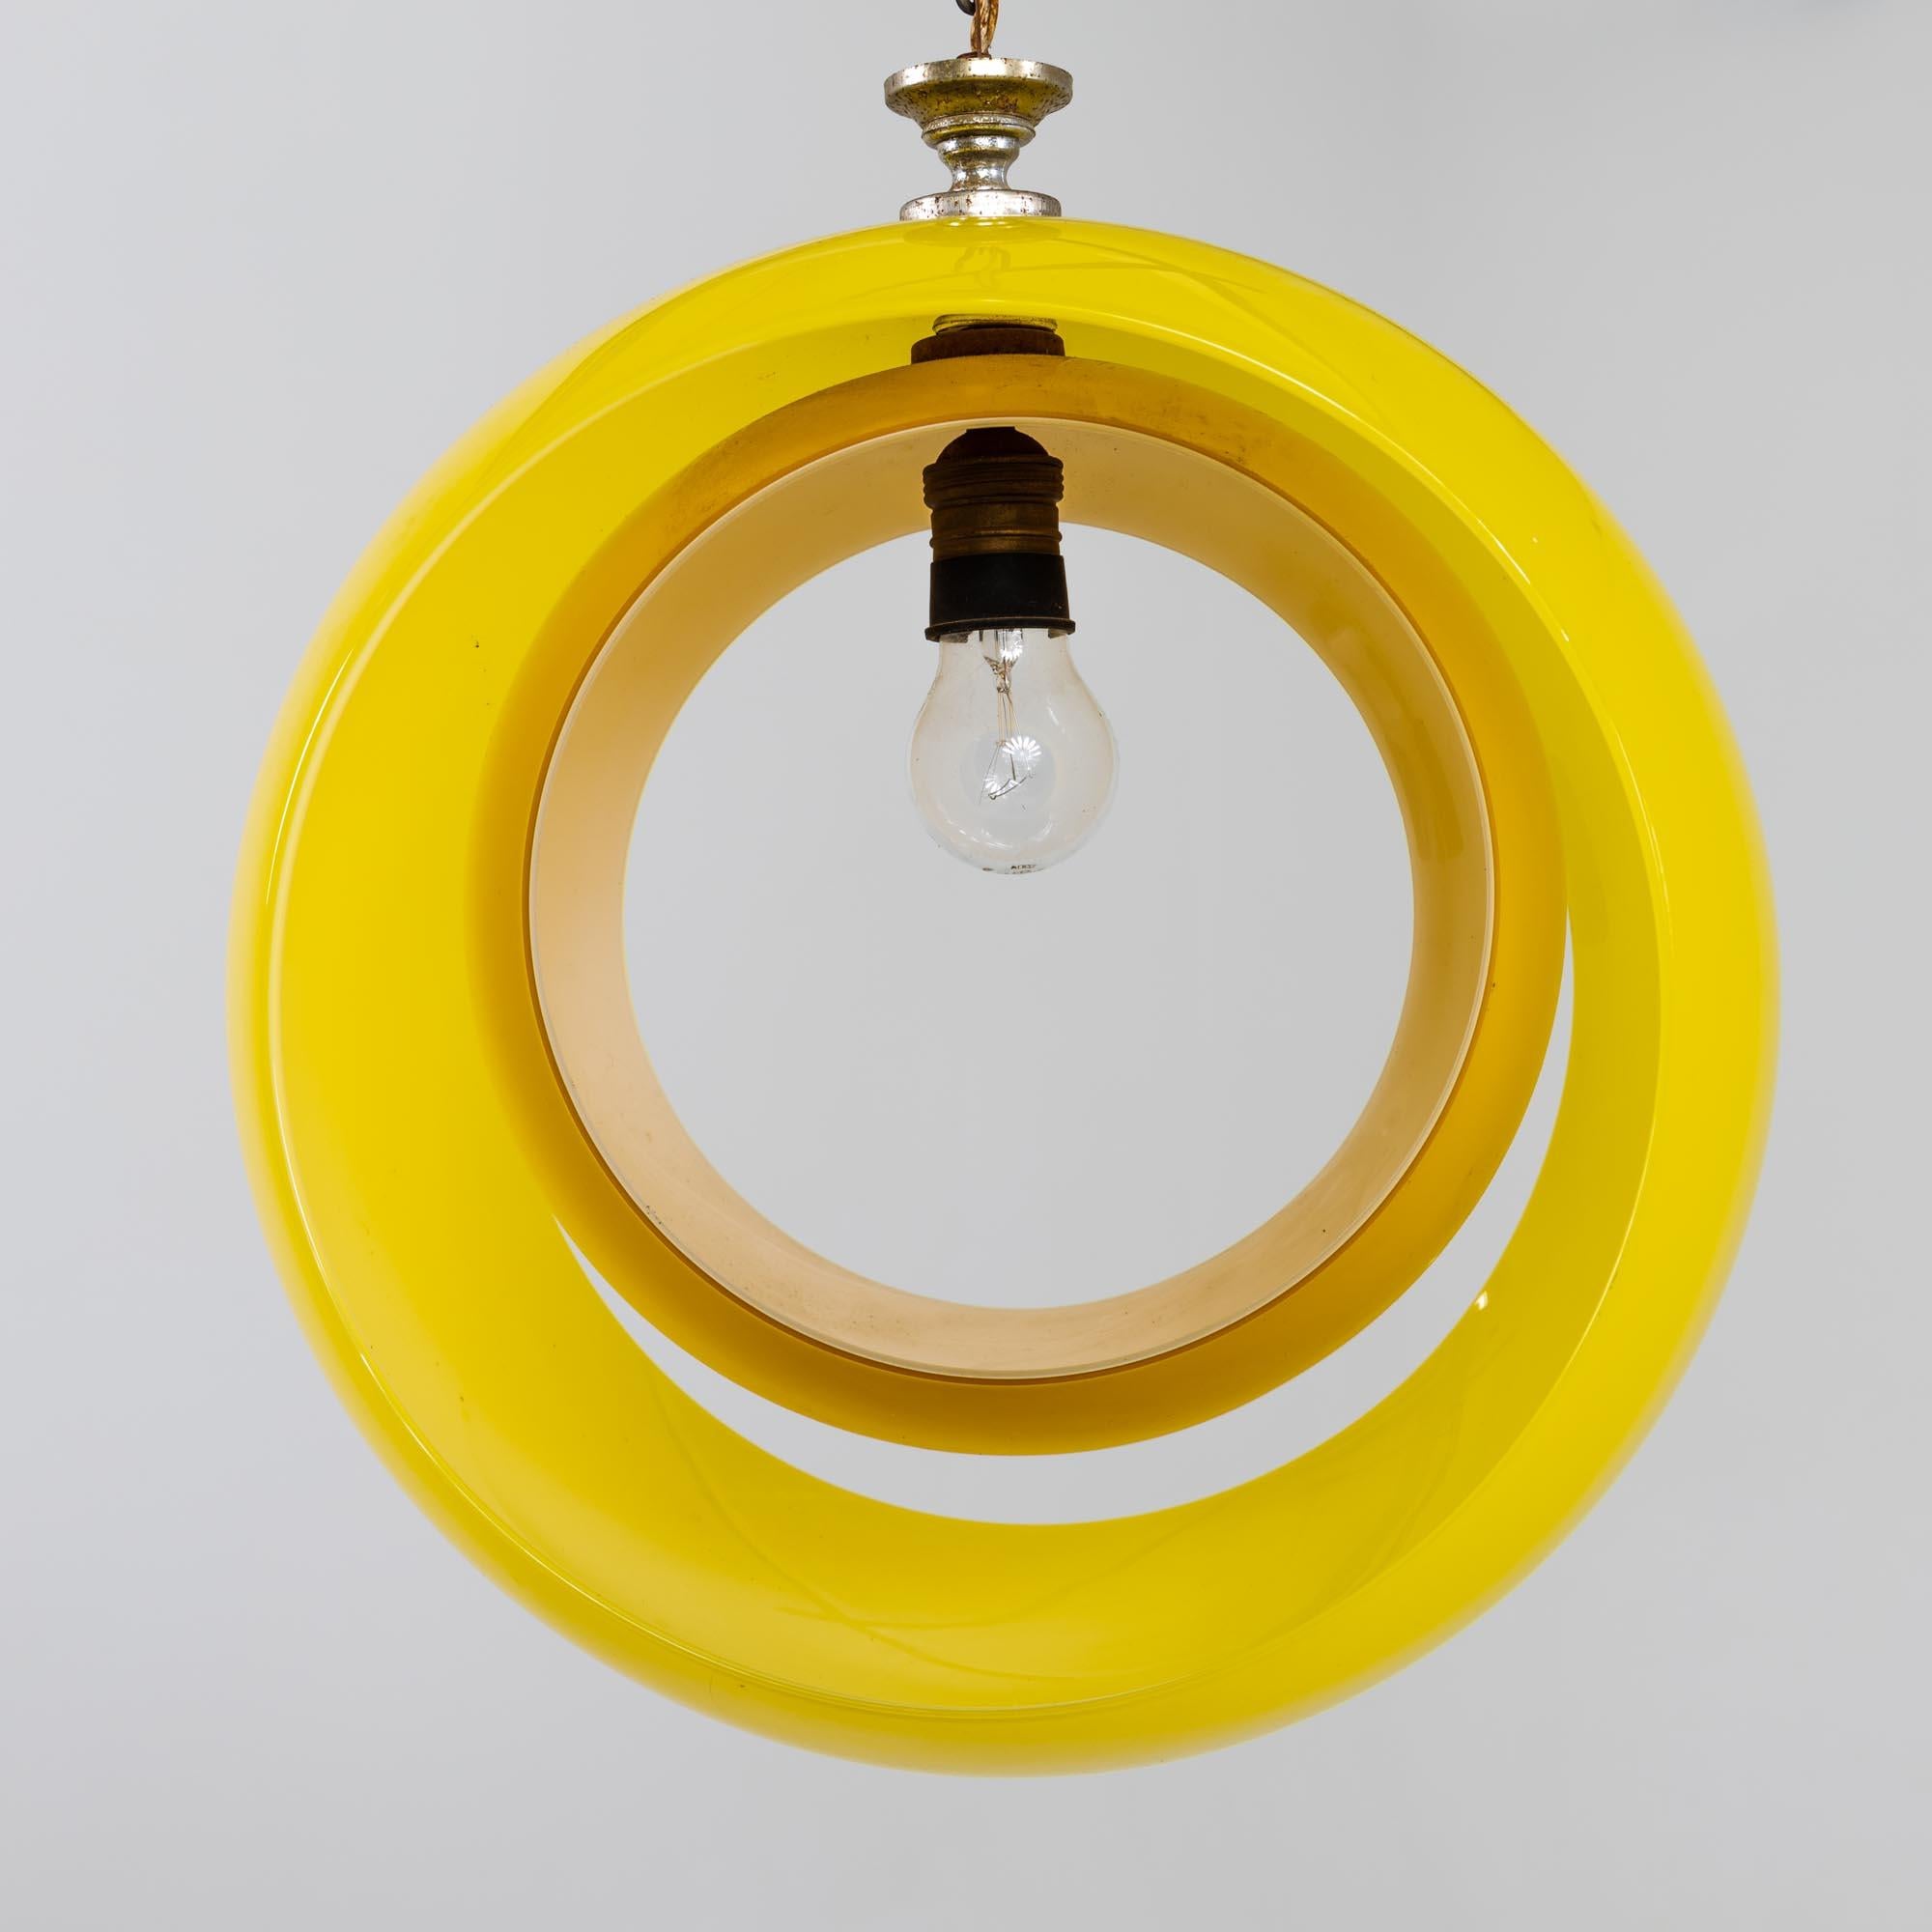 Hängelampe aus gelbem Muranoglas, entworfen von Carlo Nason für Mazzega in den 1960er Jahren. Die Leuchte besteht aus zwei Glasbügeln, die nach Belieben gedreht werden können, so dass die einzelne Glühbirne auch komplett verdeckt werden kann. Länge